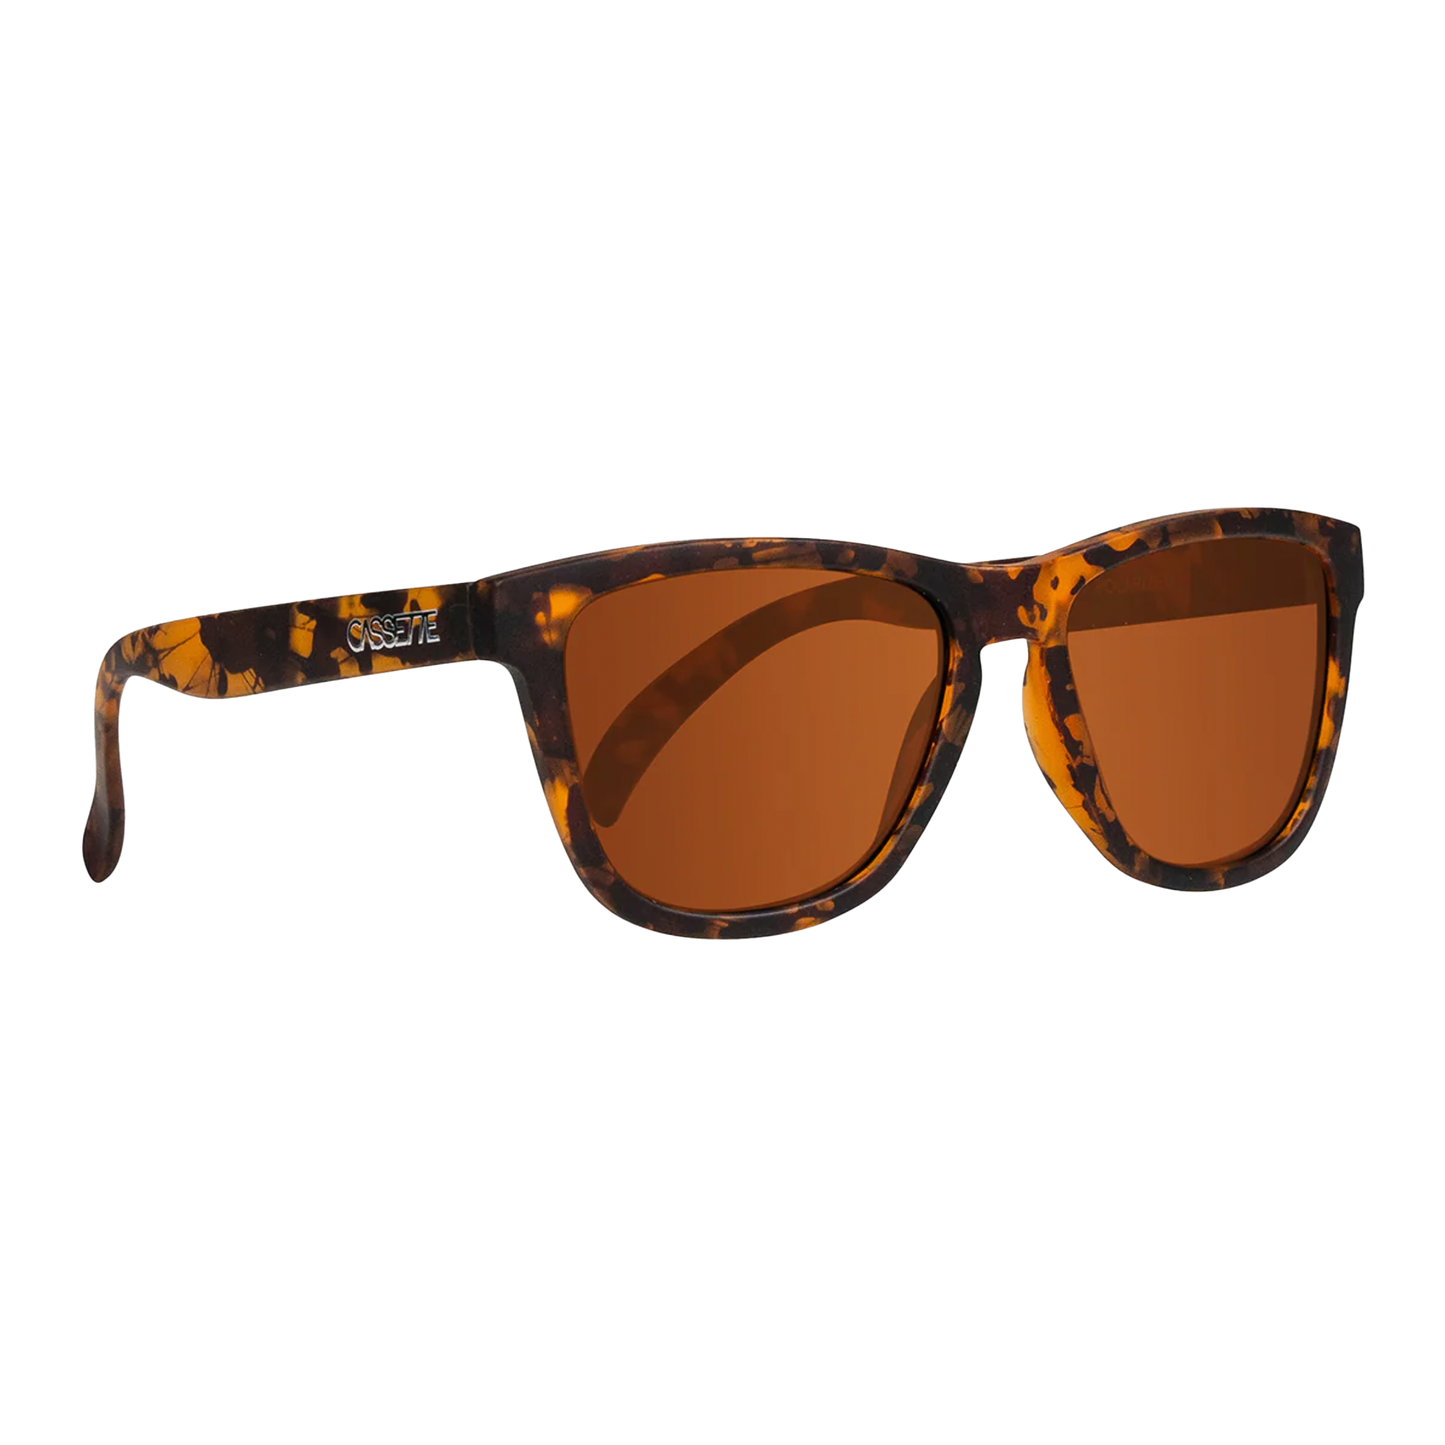 Cassette Easy Livin' Sunglasses - Splatter Tortoise / Polarized Brown Lens